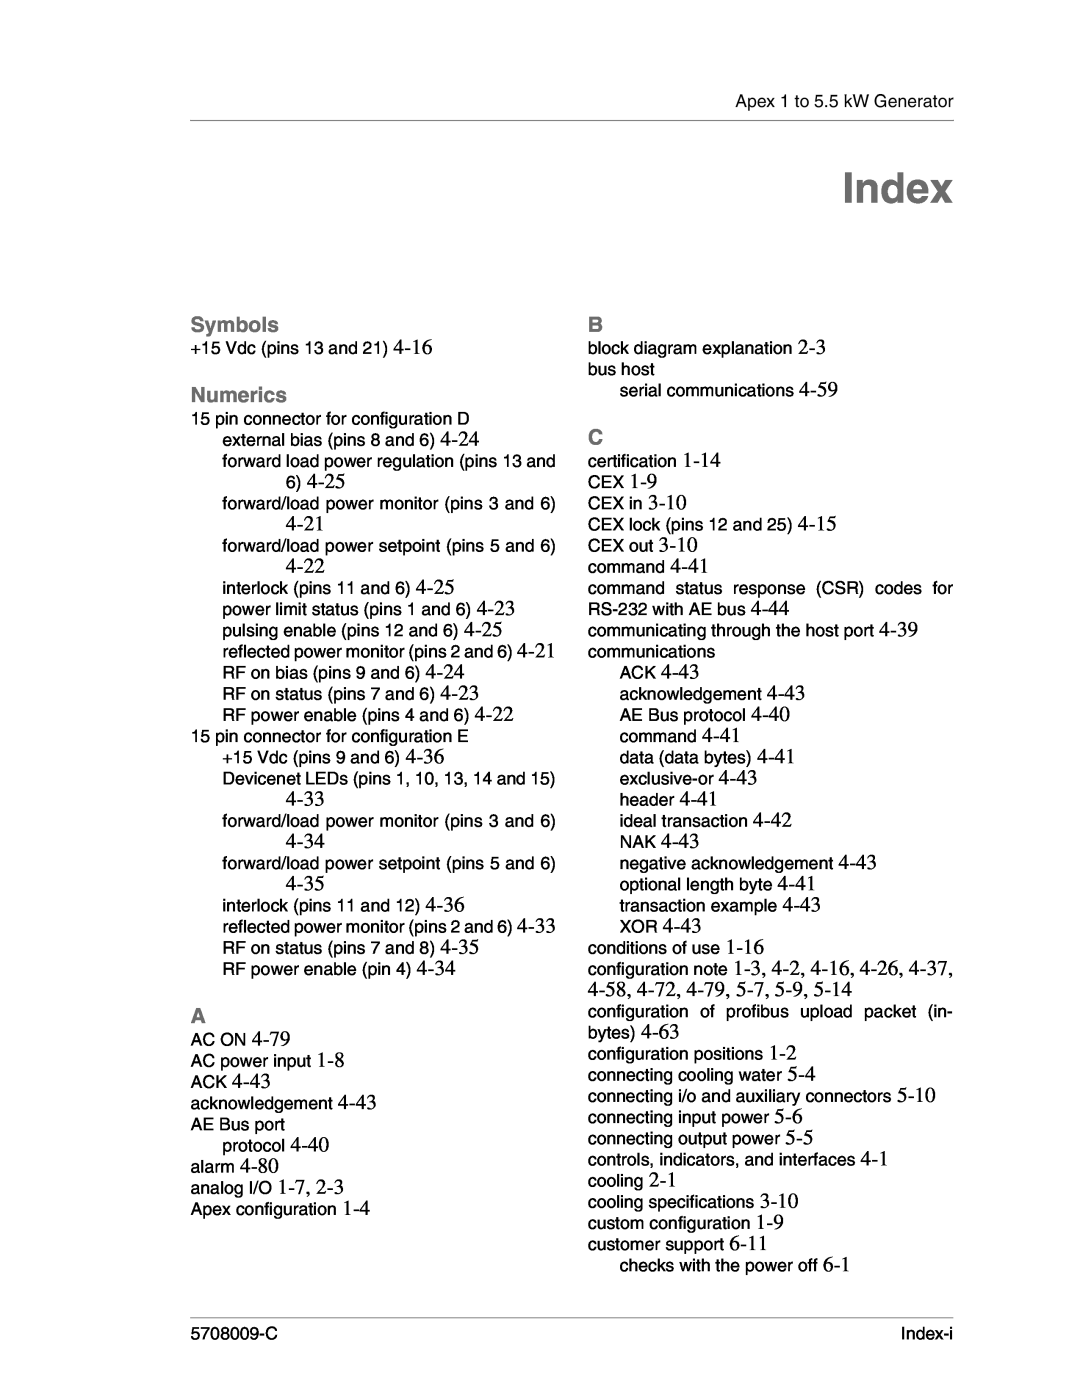 Apex Digital 5708009-C manual Symbols, Numerics, 4-21, 4-22, 4-33, 4-34, 4-35, Index 